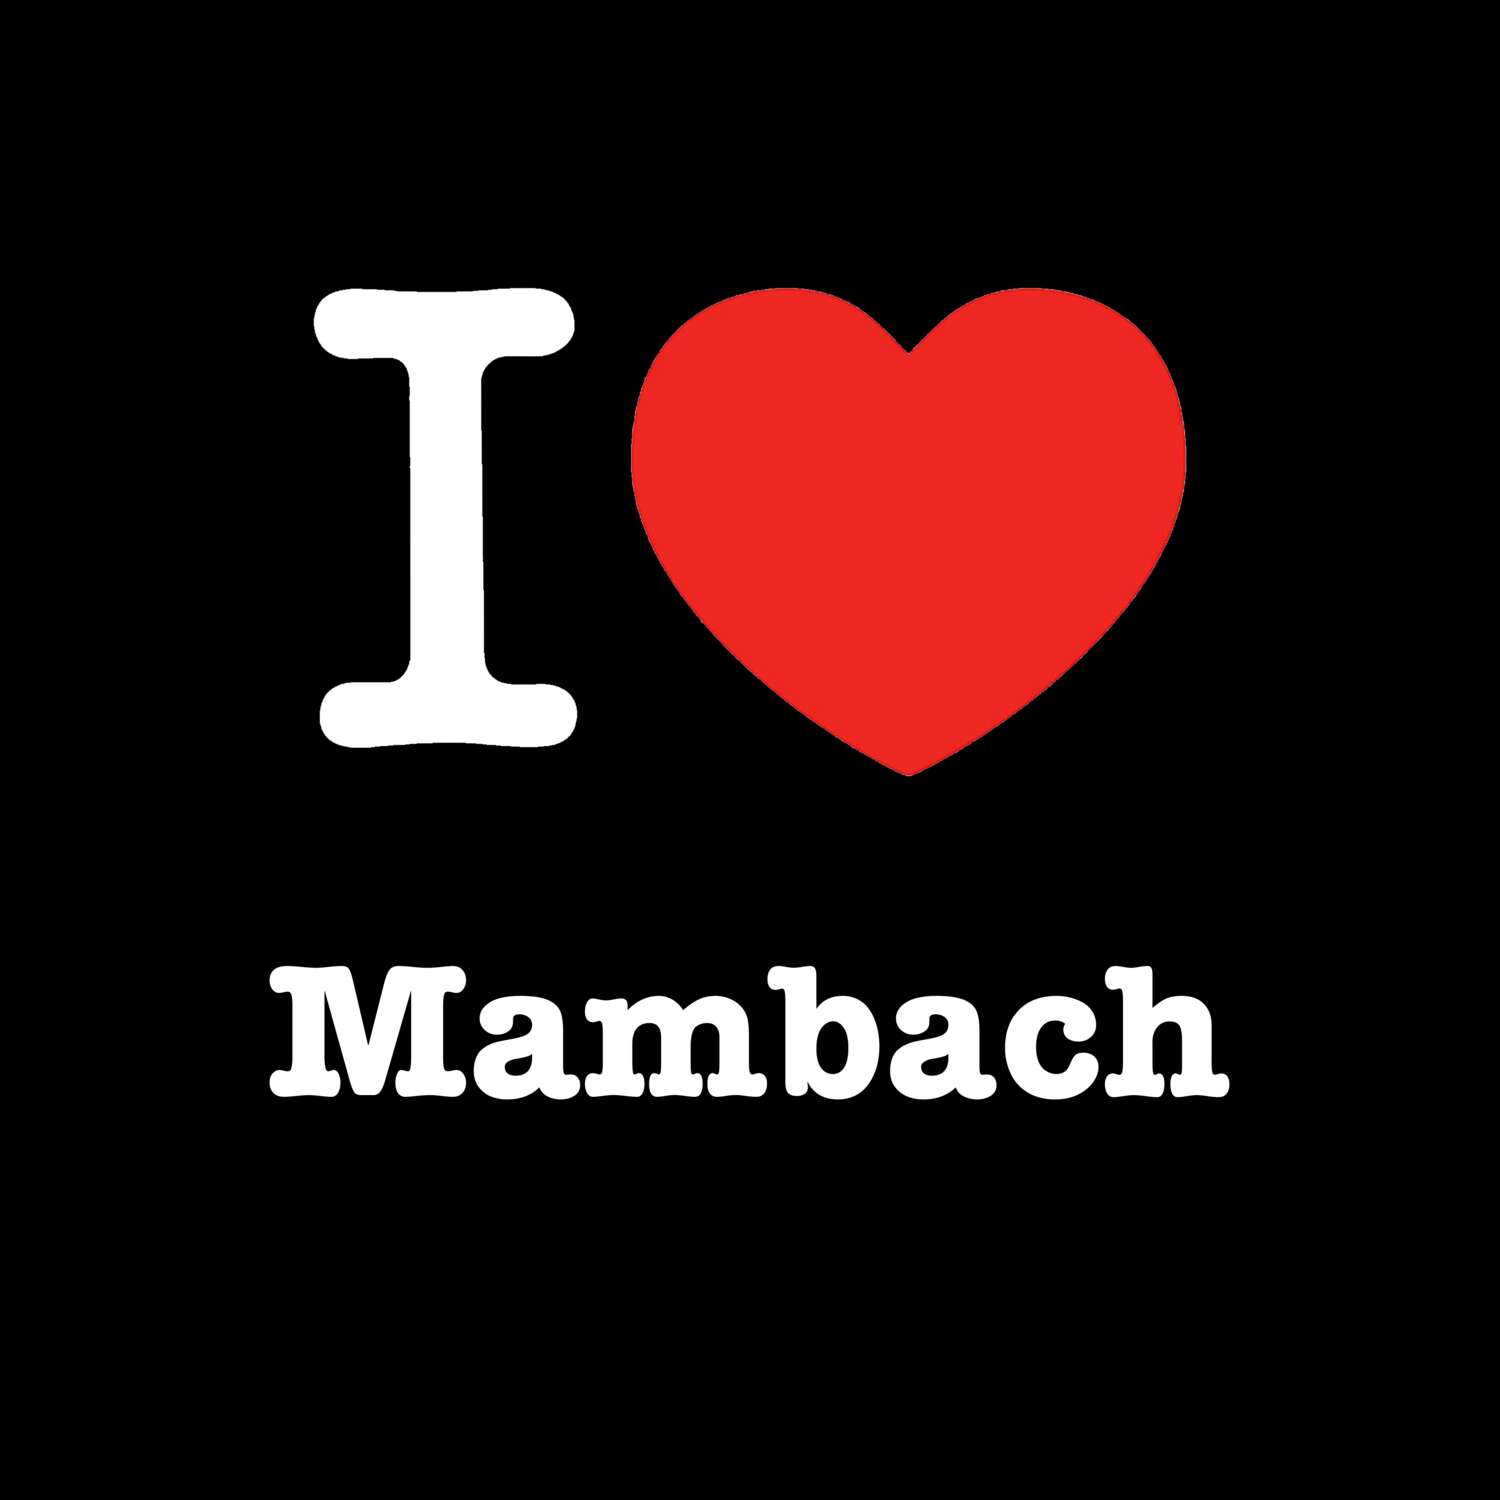 Mambach T-Shirt »I love«